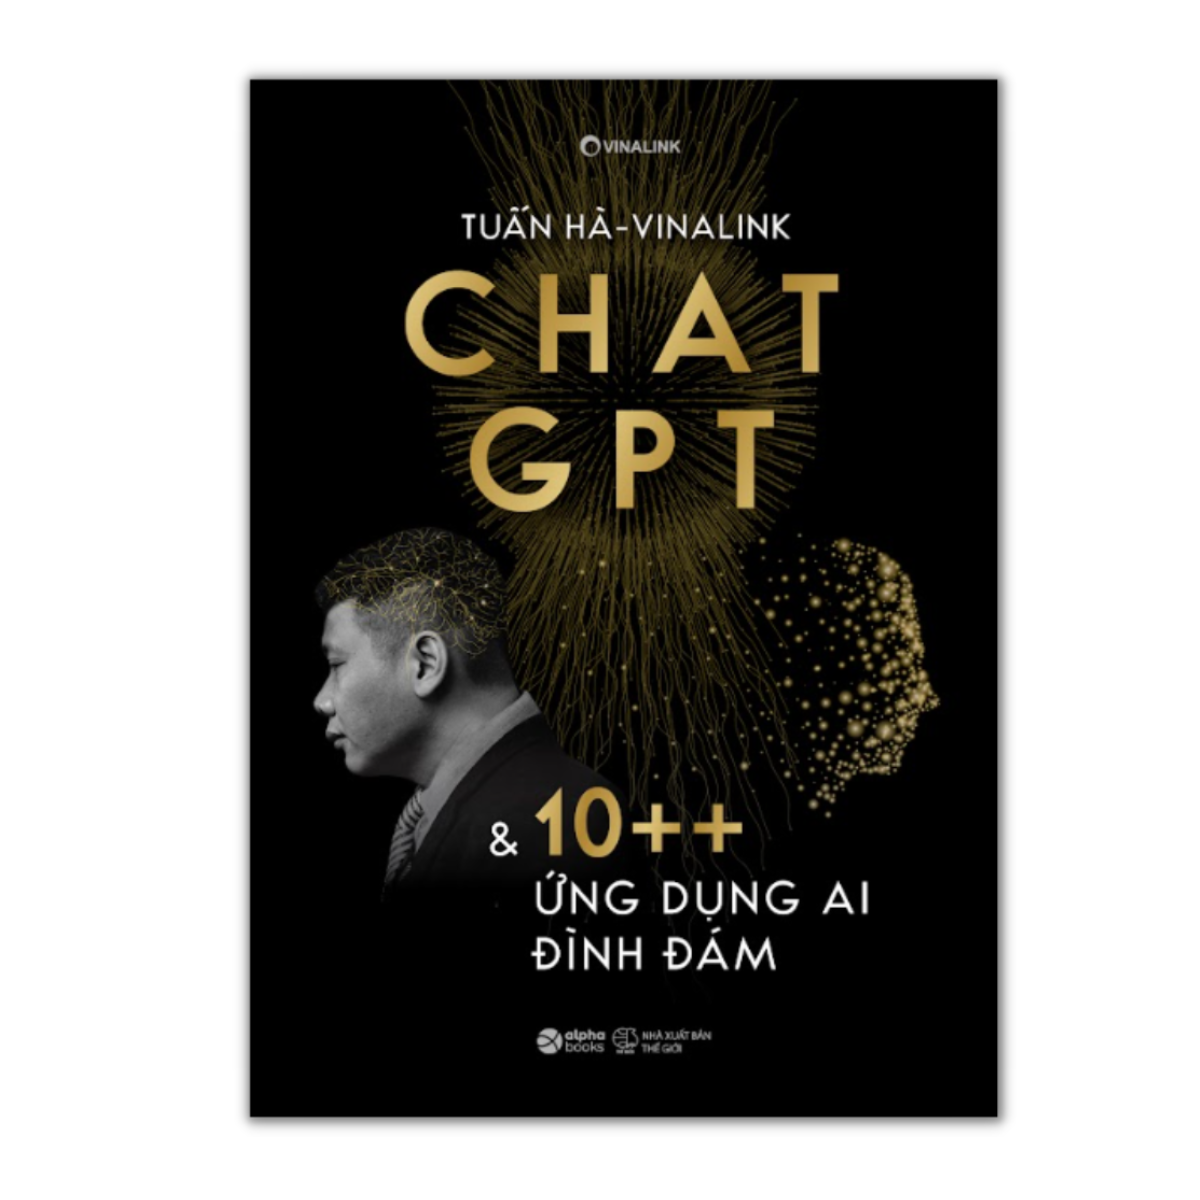 Chat GPT & 10++ Ứng Dụng AI Đình Đám (Tuấn Hà - Vinalink)